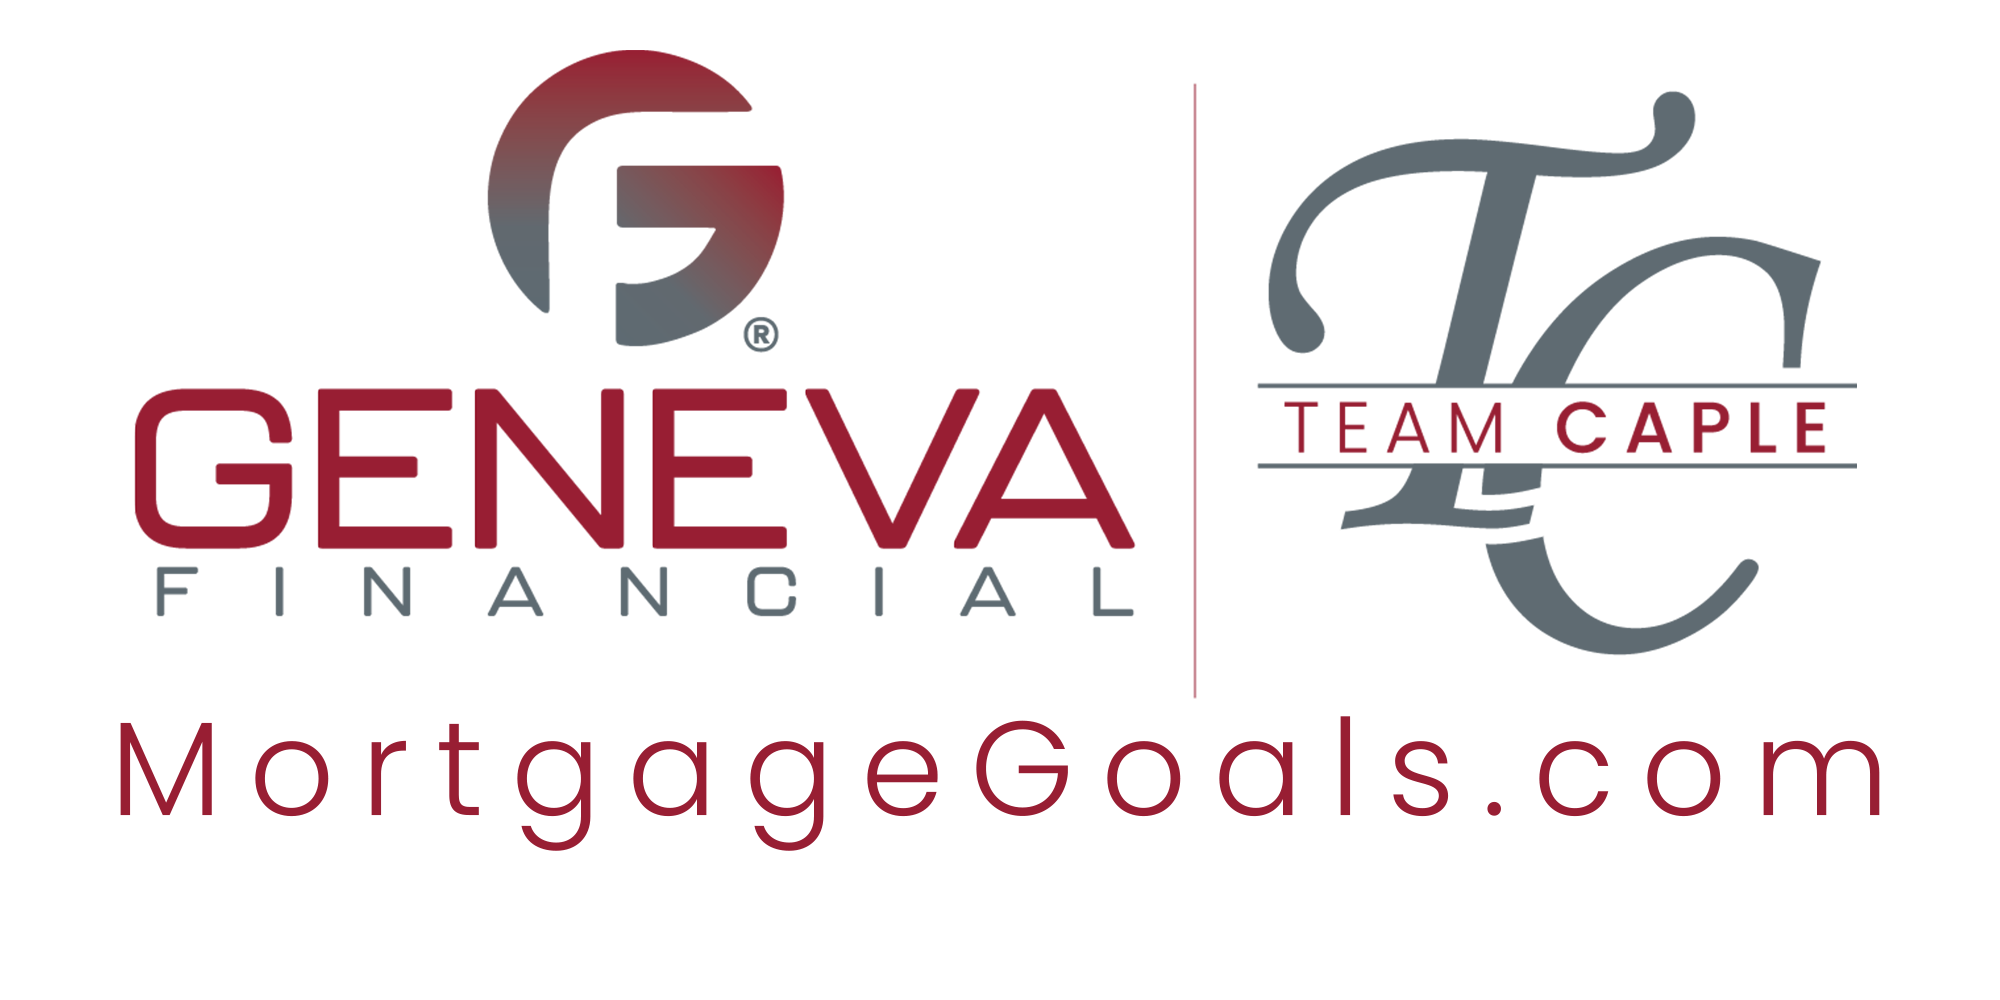 Geneva Financial & Team Caple